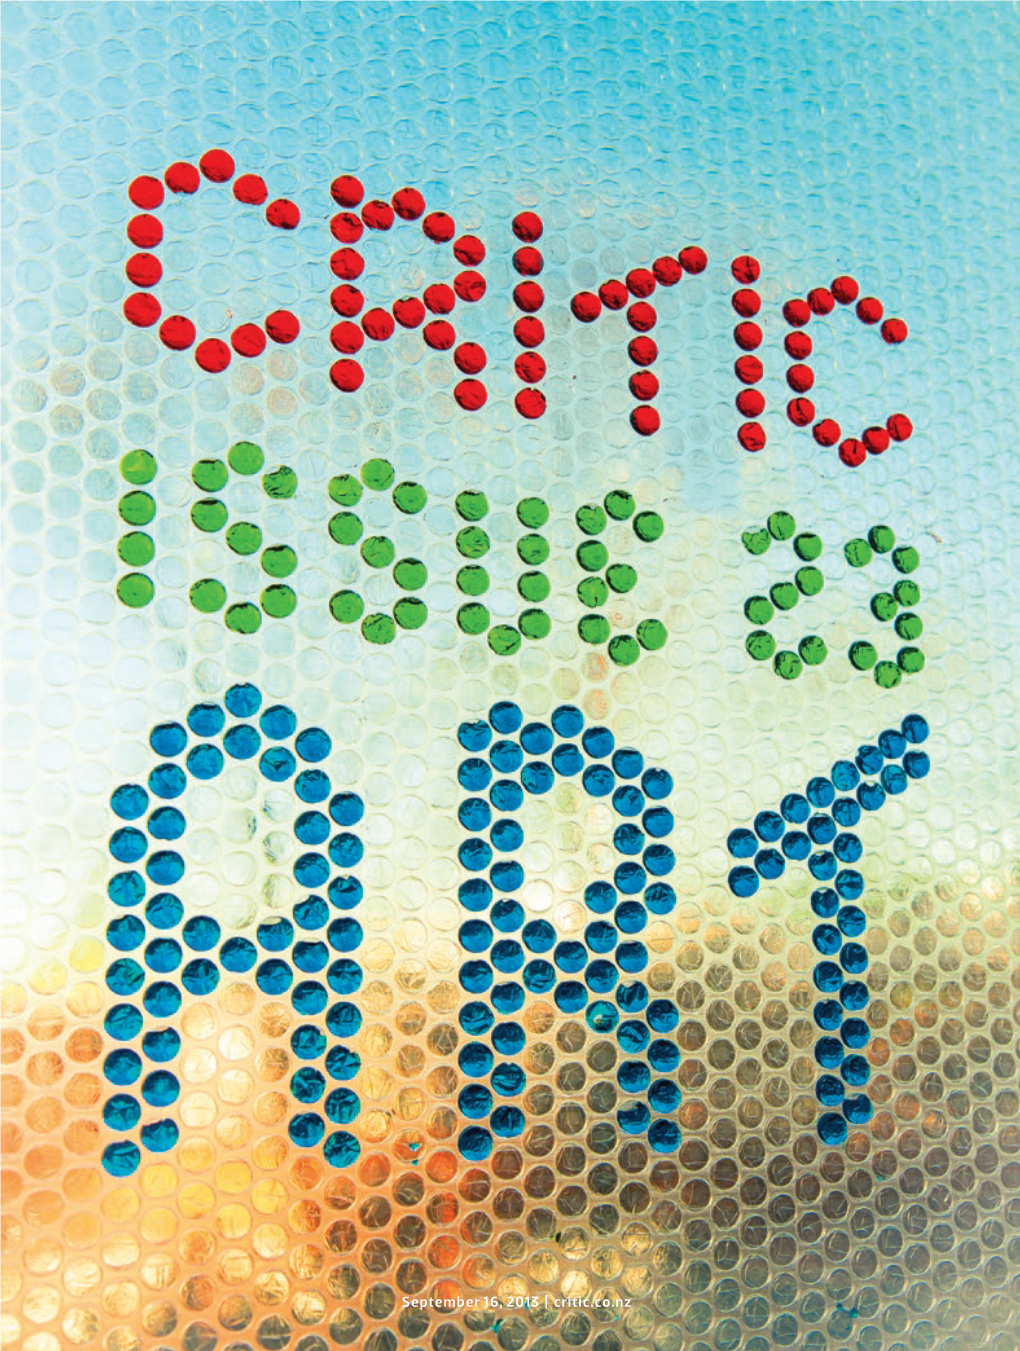 September 16, 2013 | Critic.Co.Nz